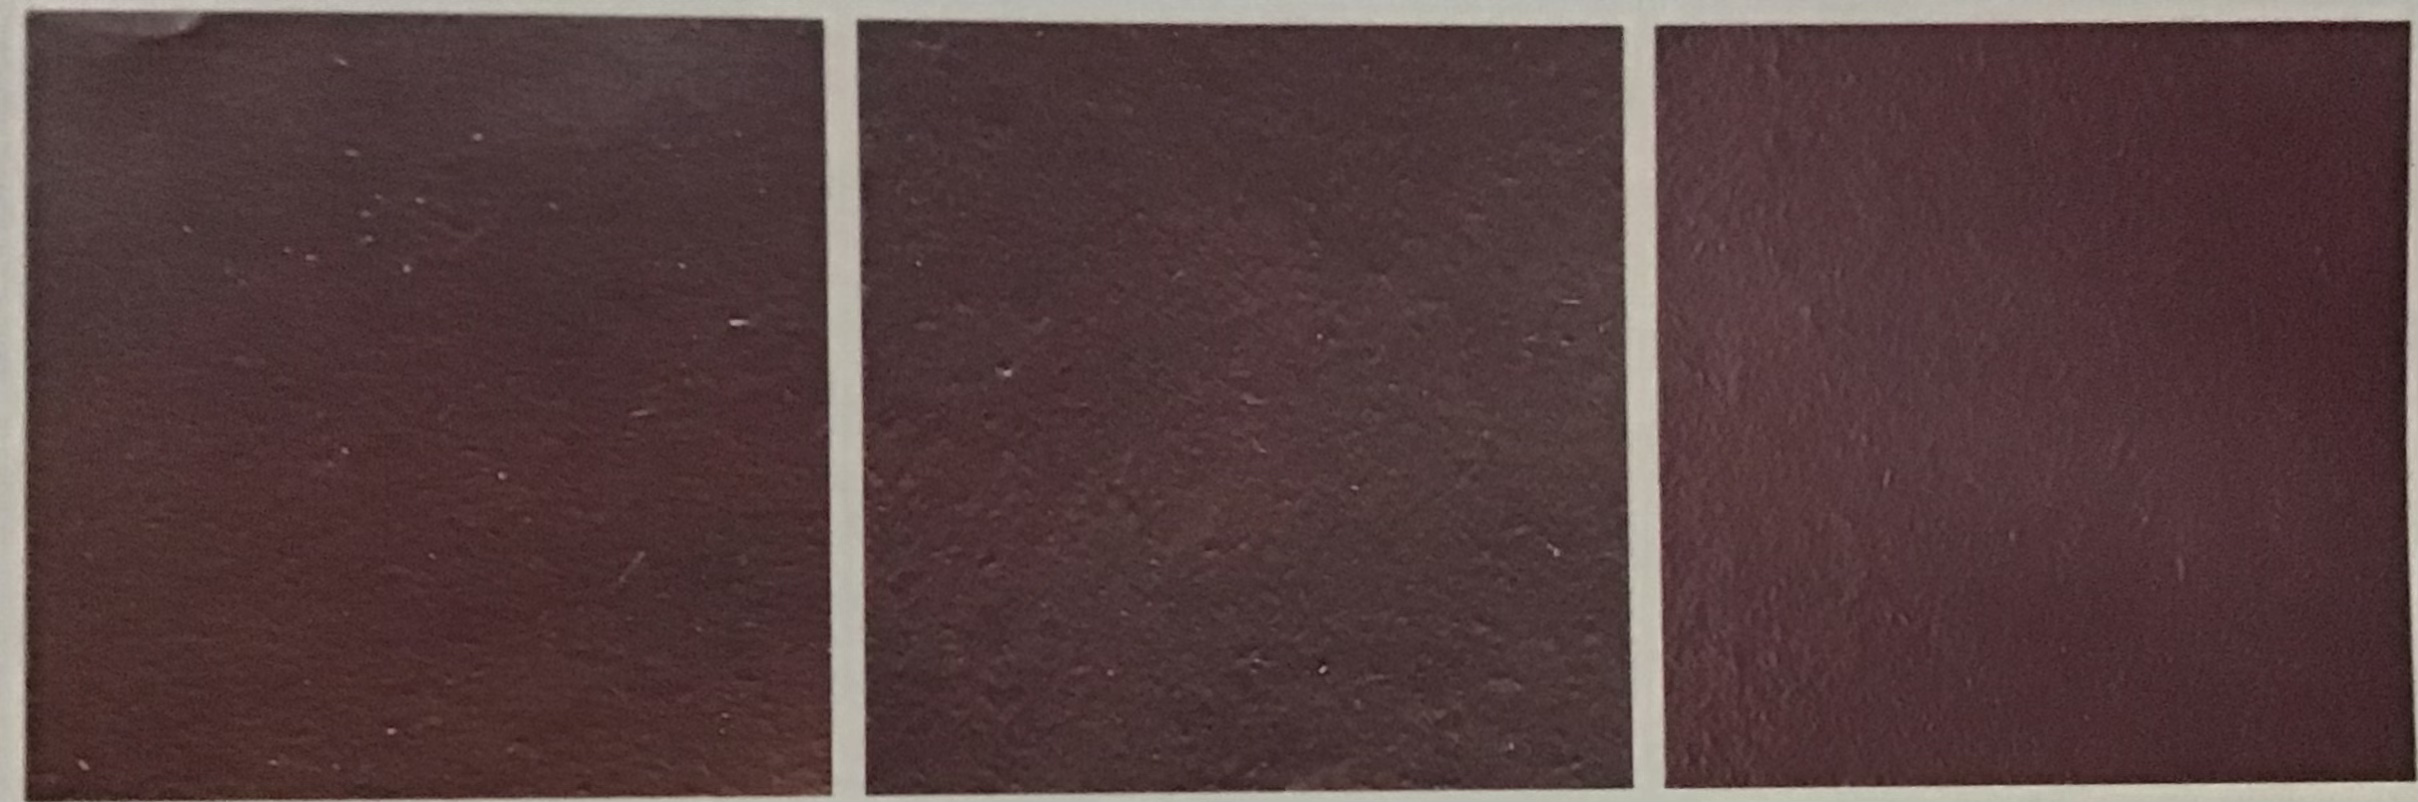 Hình 5-31: Thay đổi màu sắc khi nung chu nê đại hồng bào ở các nhiệt độ khác nhau